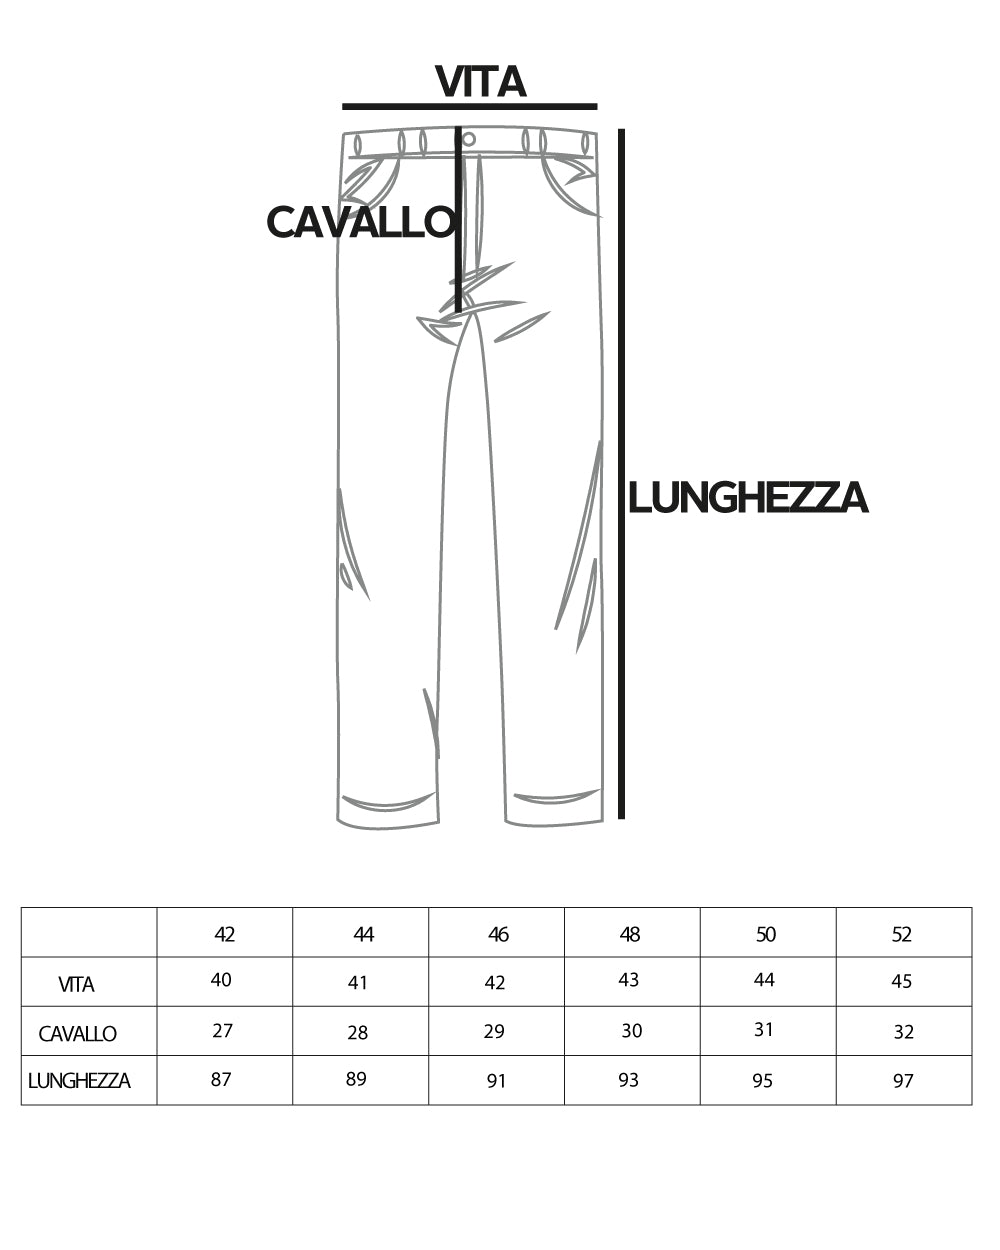 Pantaloni Uomo Abbottonatura Allungata Fibbia Alta Classico Pinces Elegante Grigio GIOSAL-P5382A